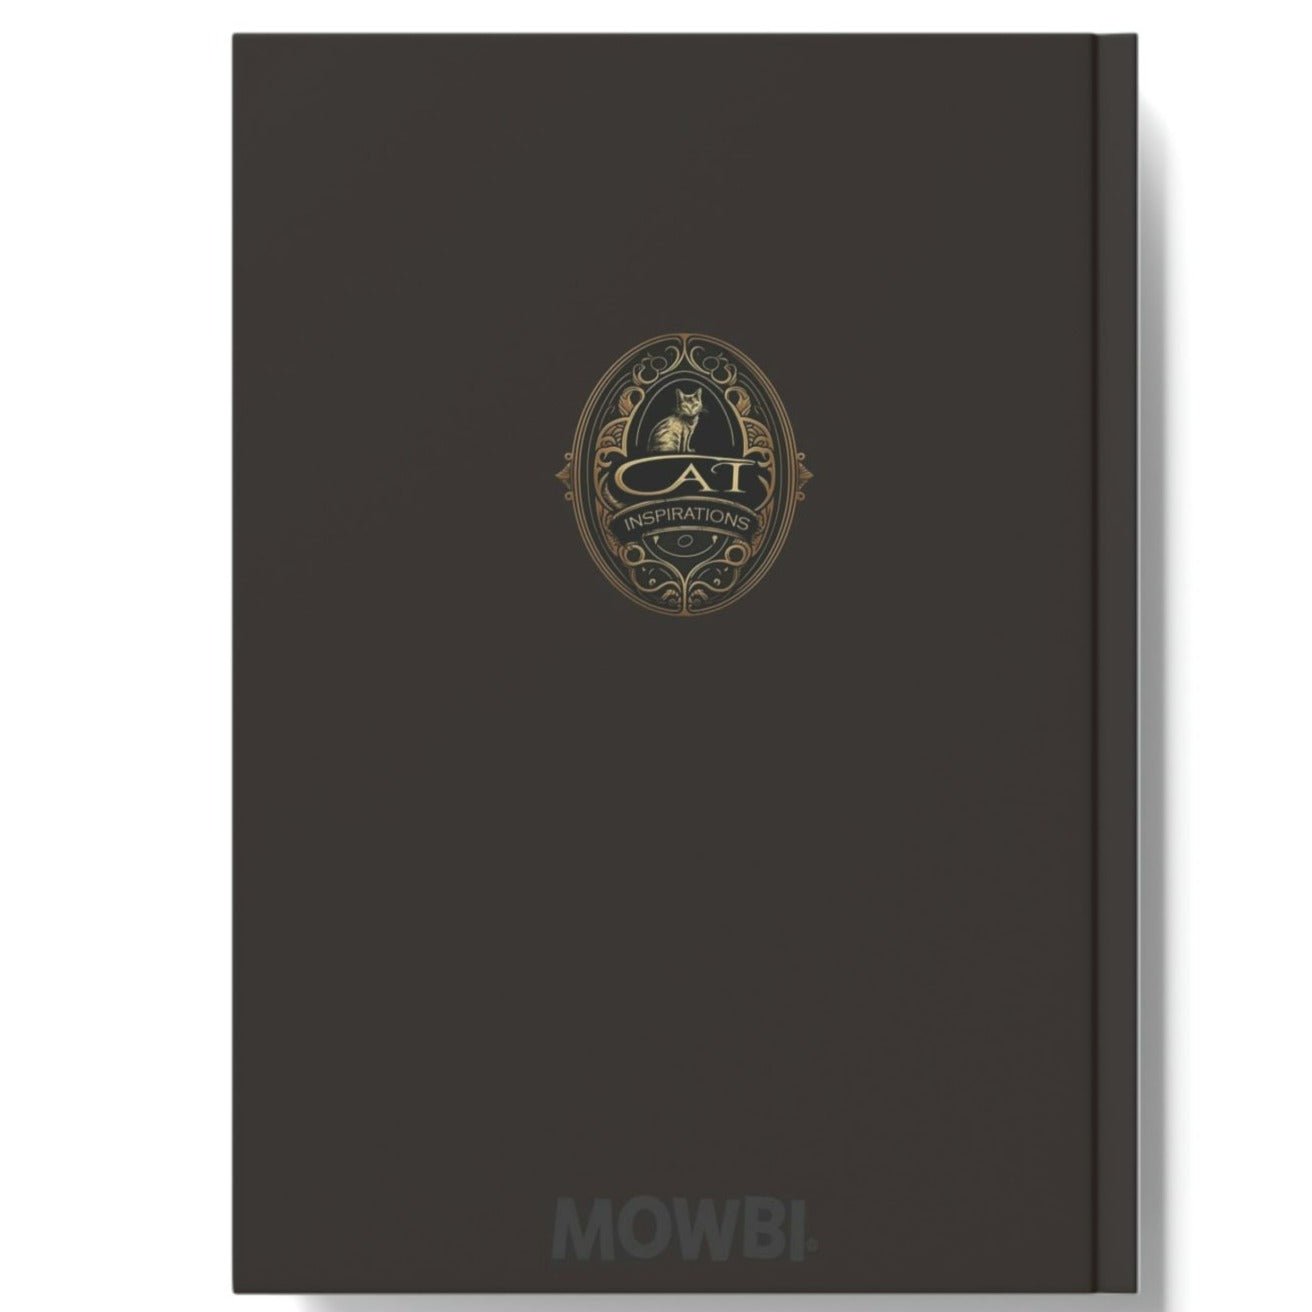 Savannah Cat Notebook - Modern - Cat Inspirations - Hard Backed Journal